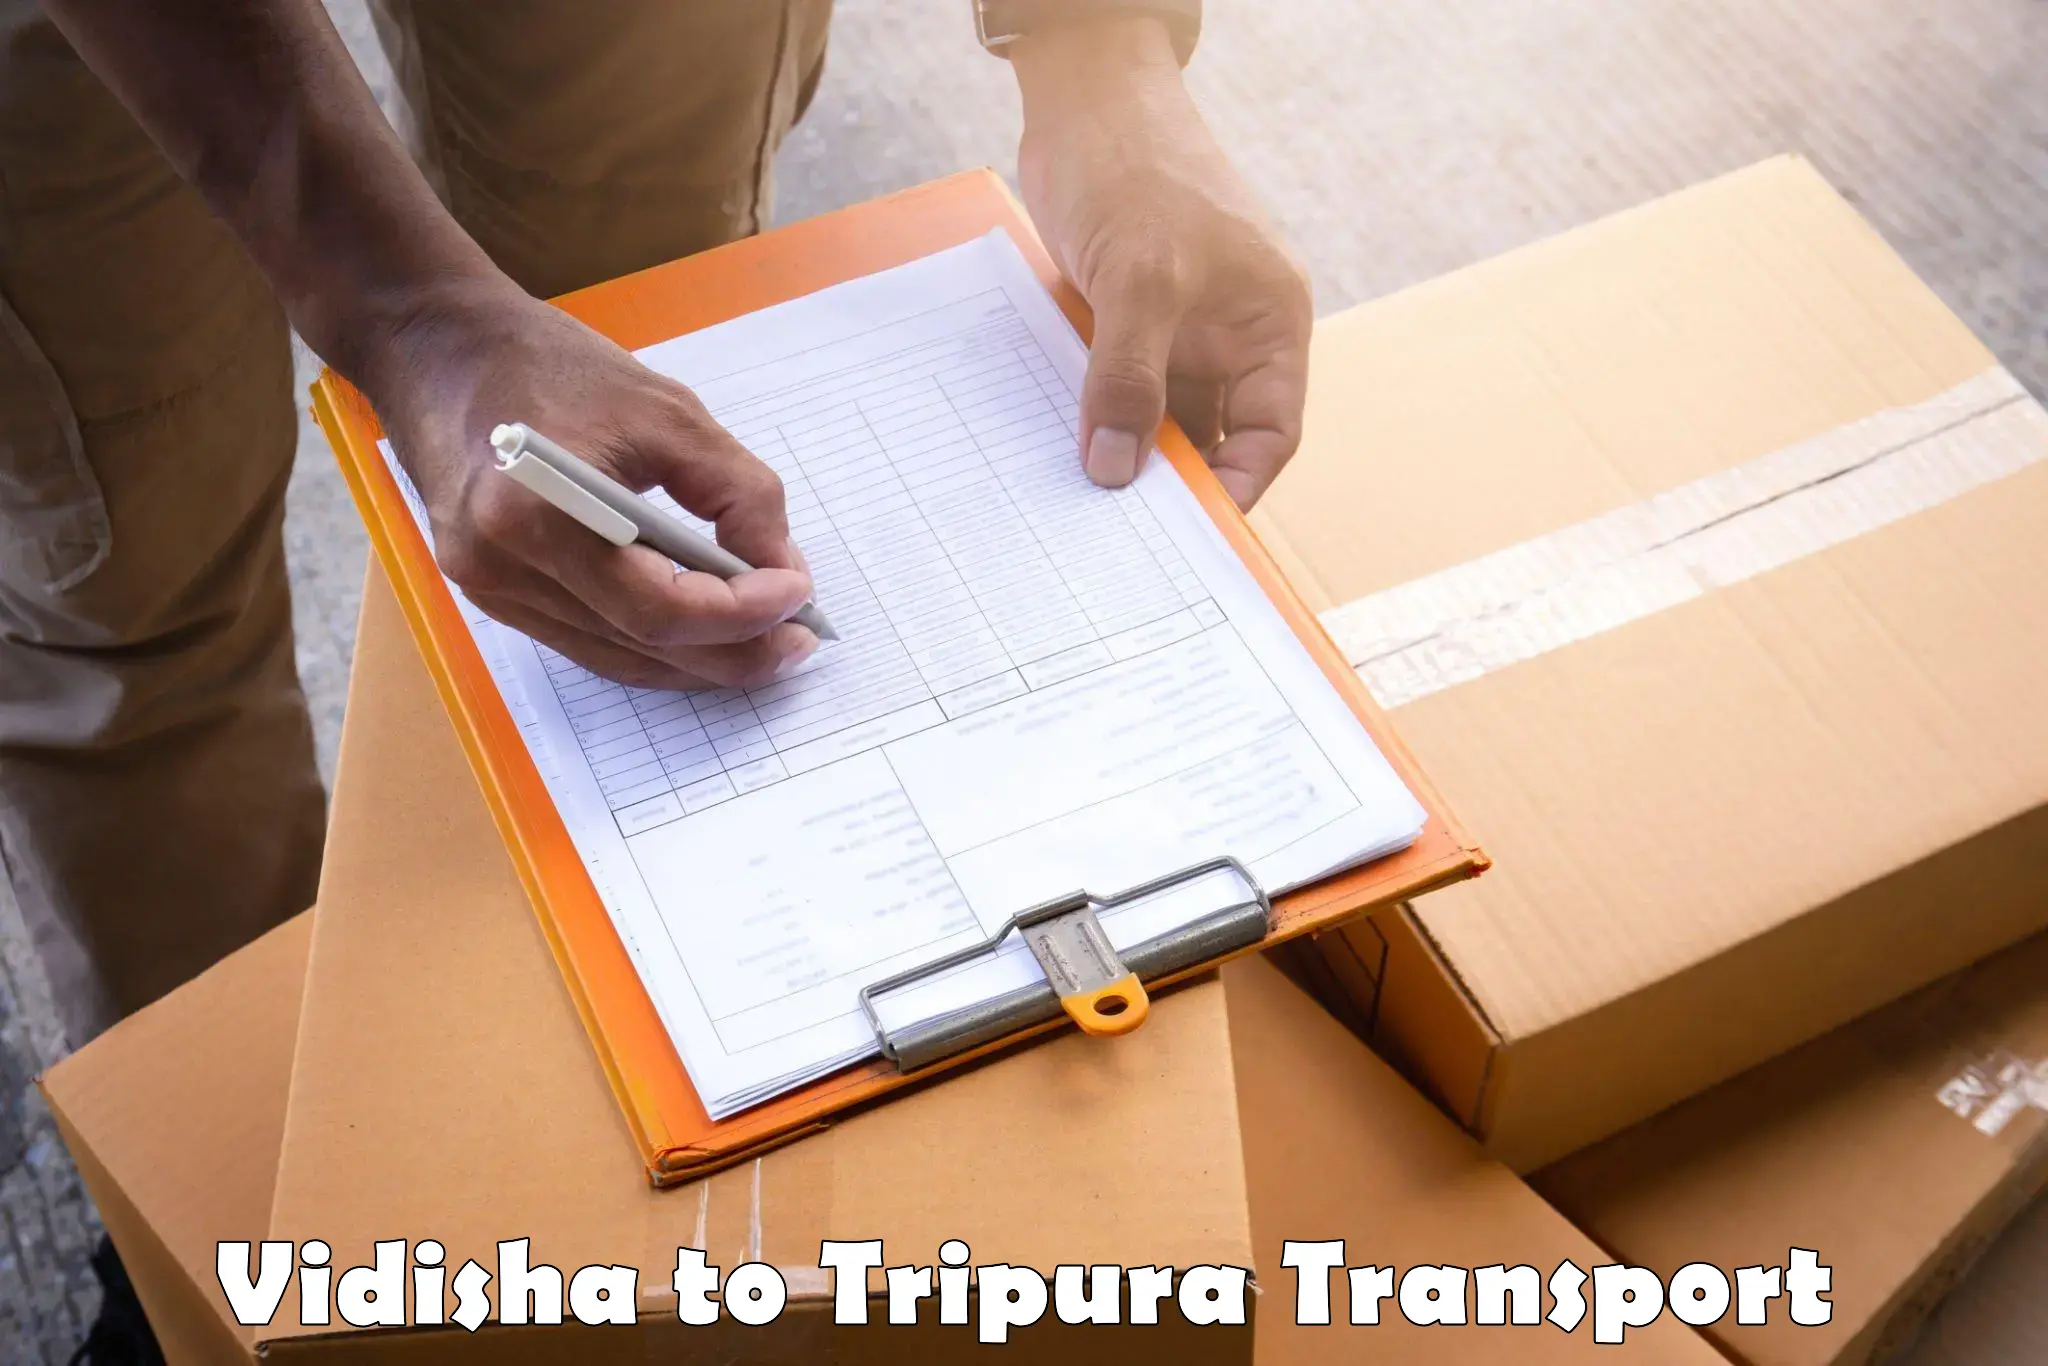 Transport in sharing Vidisha to IIIT Agartala